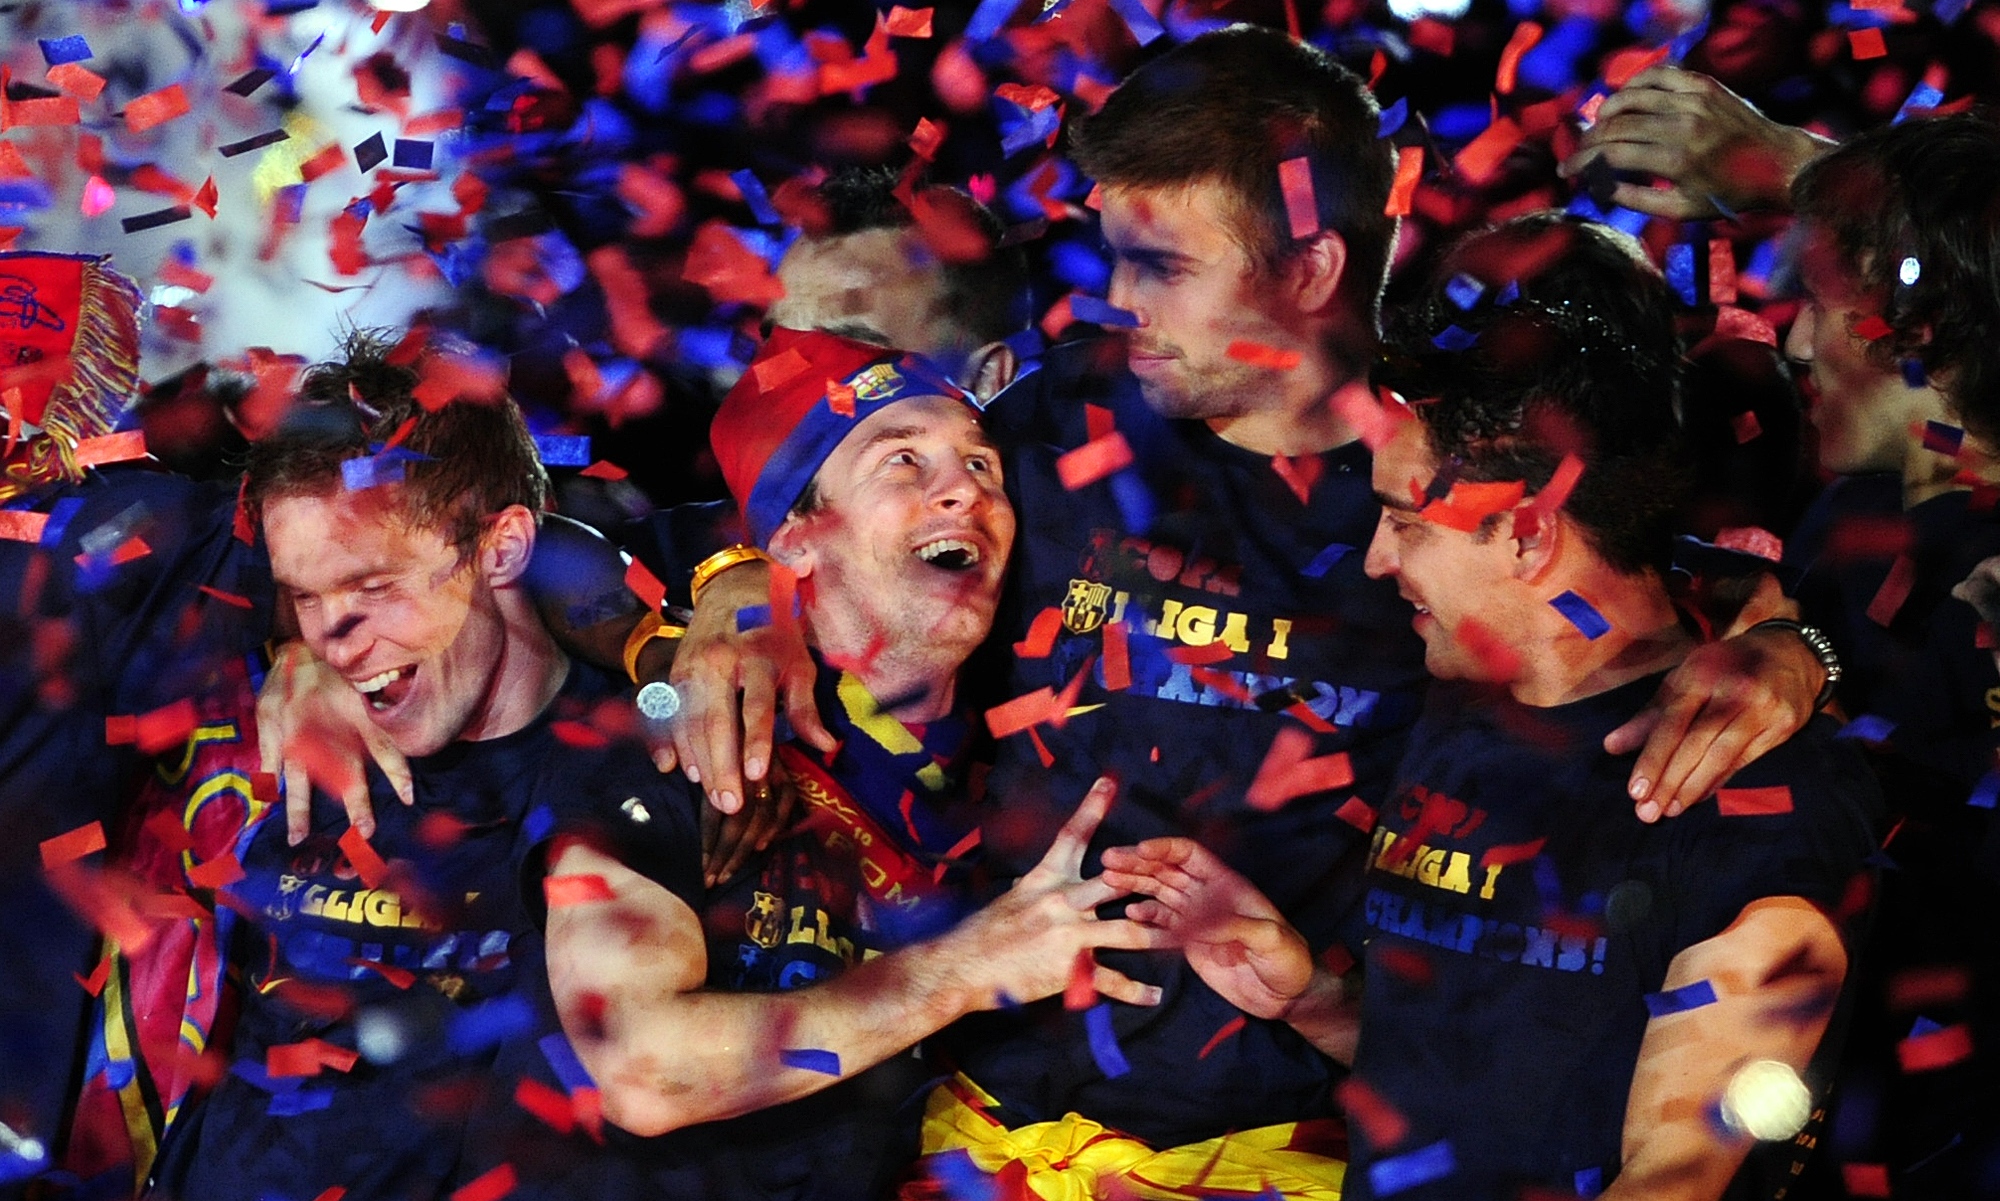 Sist det begav sig kämpade FC Barcelona hem Champions League-pokalen.